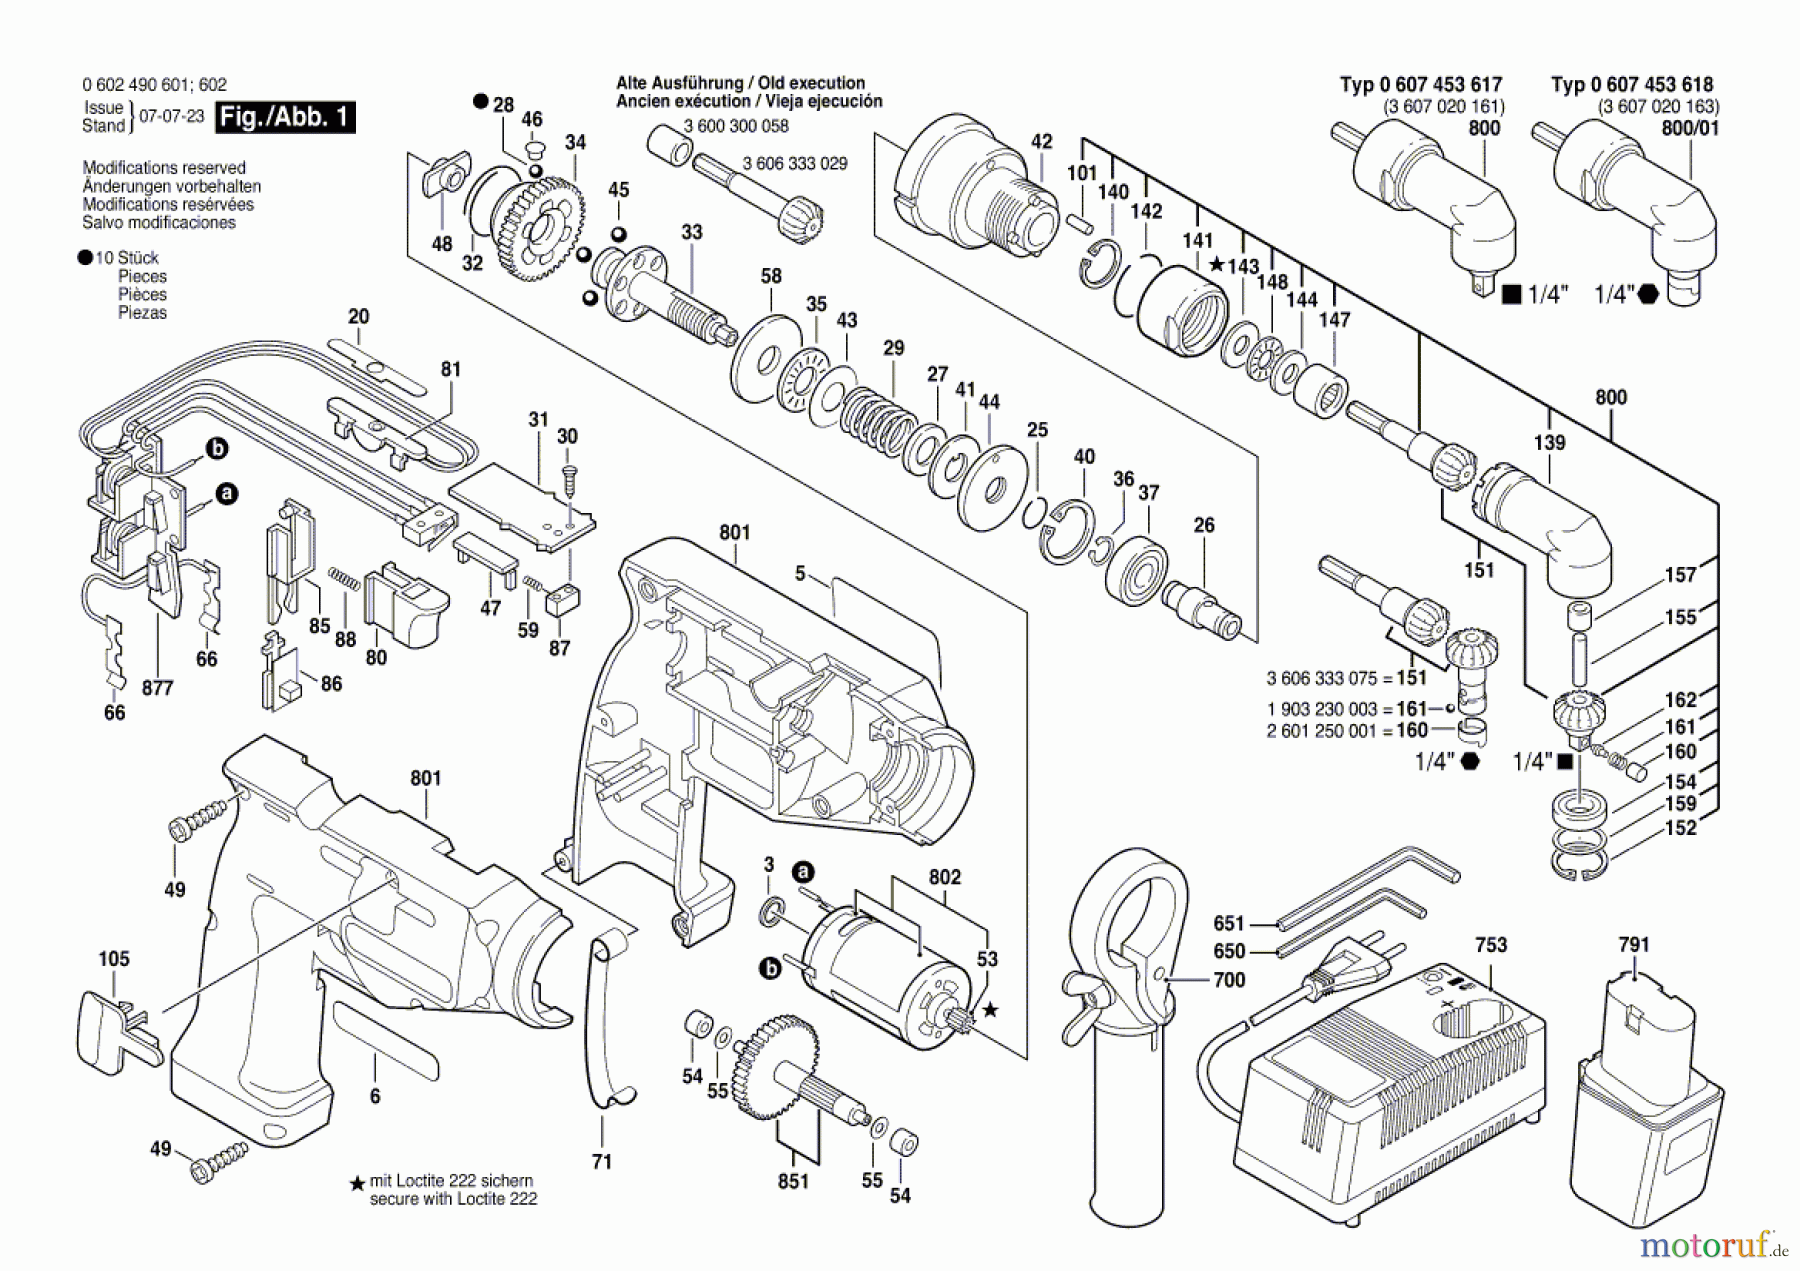  Bosch Akku Werkzeug Iw-Akku-Schrauber IASR 9,6-12V Seite 1